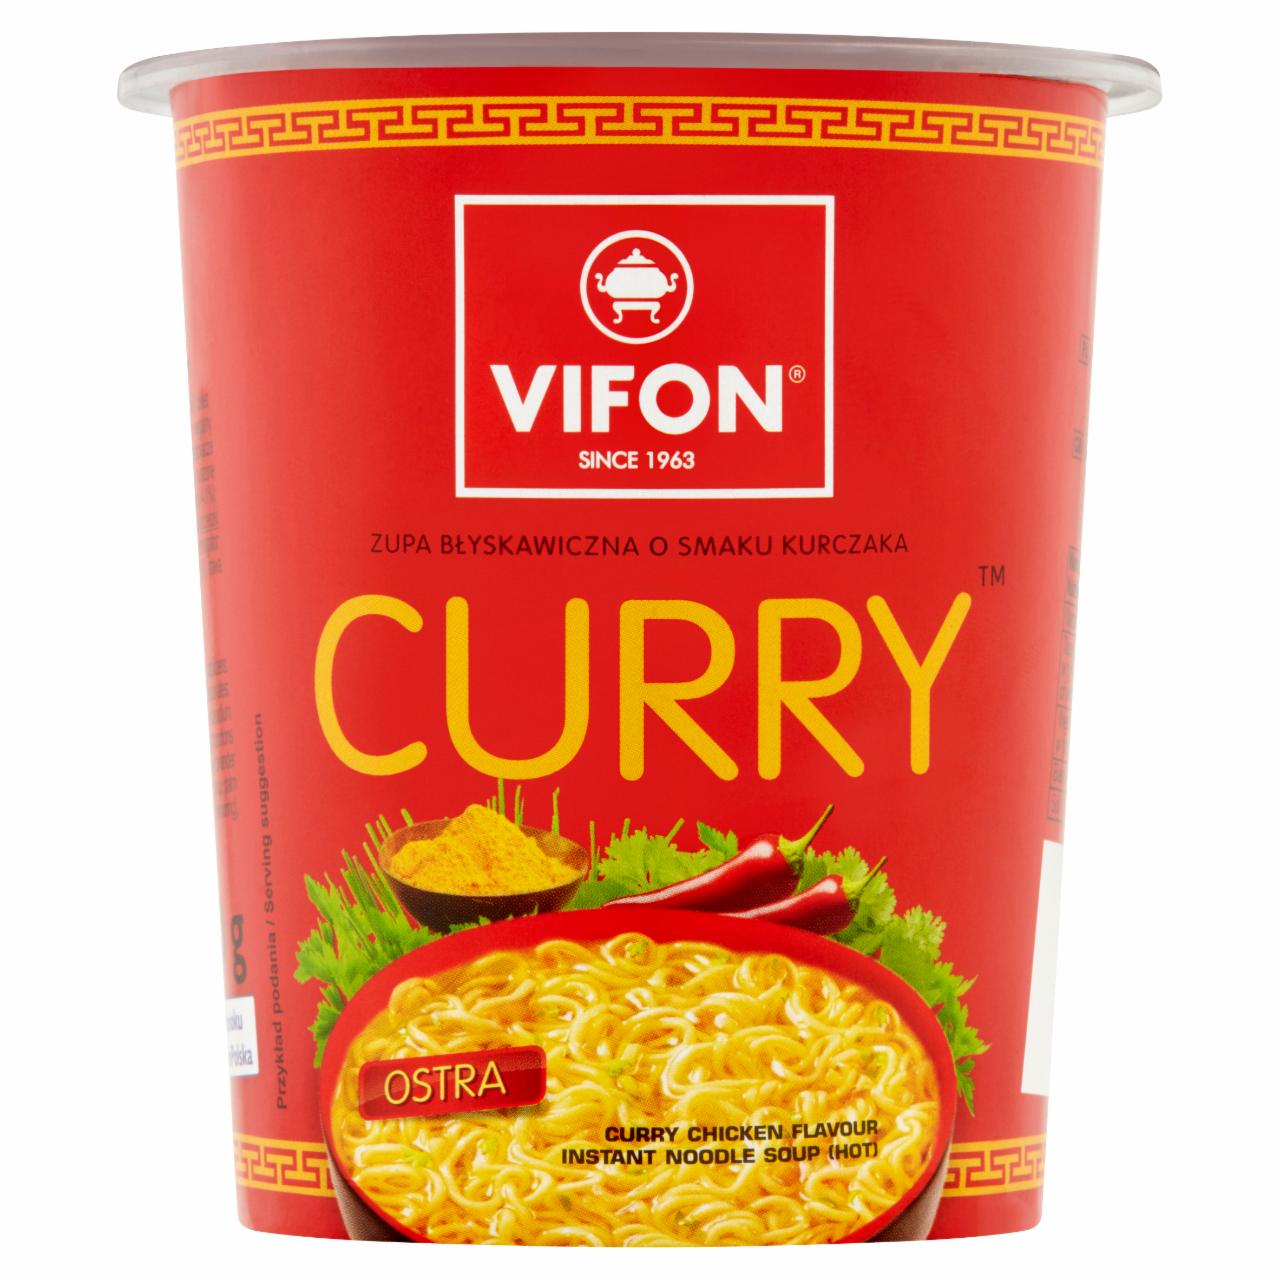 Zdjęcia - Knorr Kluski z sosem curry 90 g